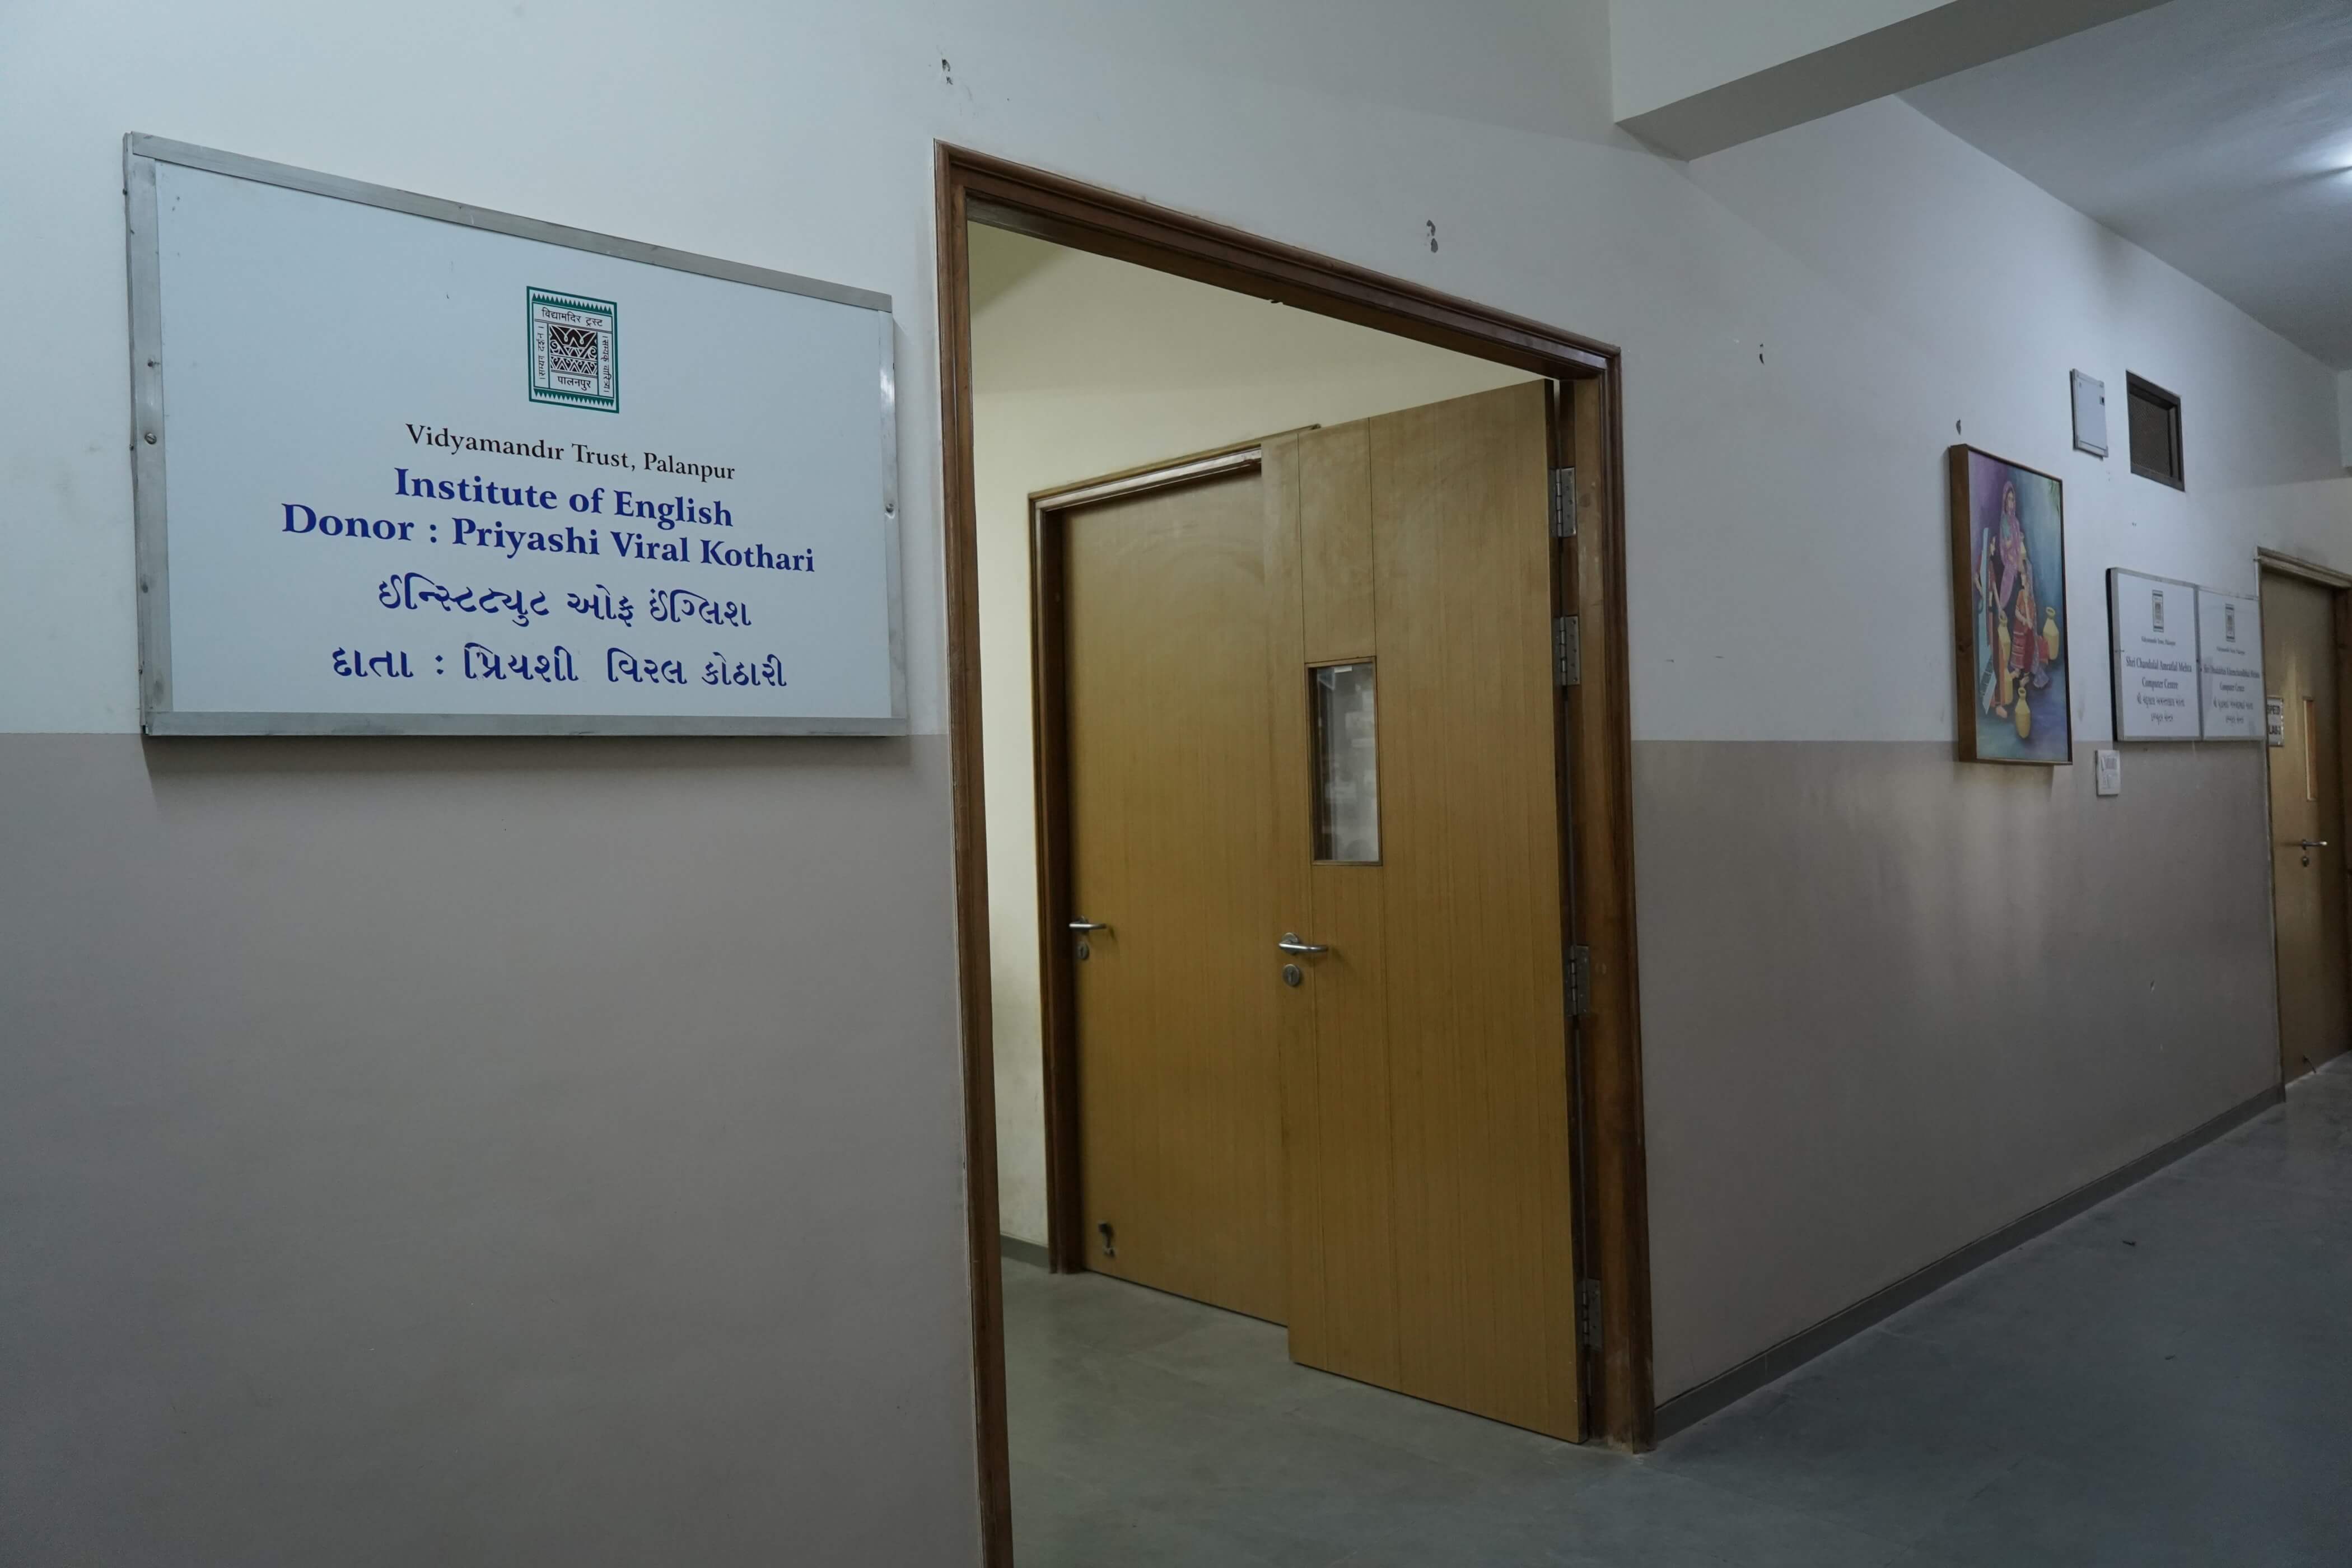 Institute of English Donor: Priyashi Viral Kothari - Building Photo